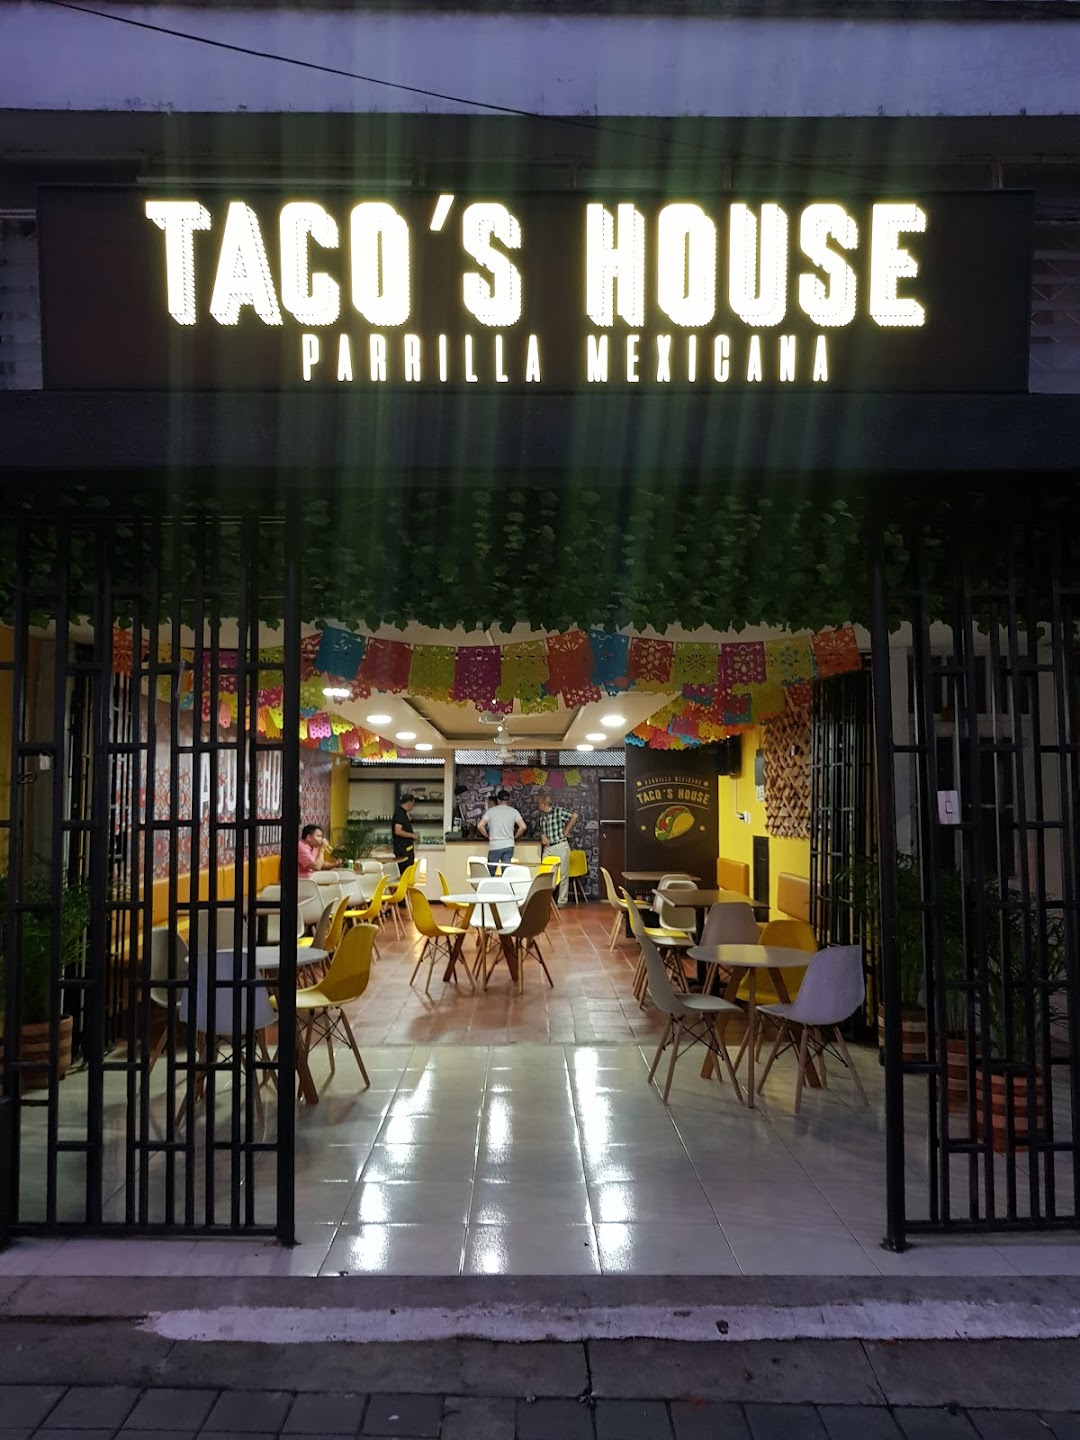 Tacos House Parrilla comida mexicana